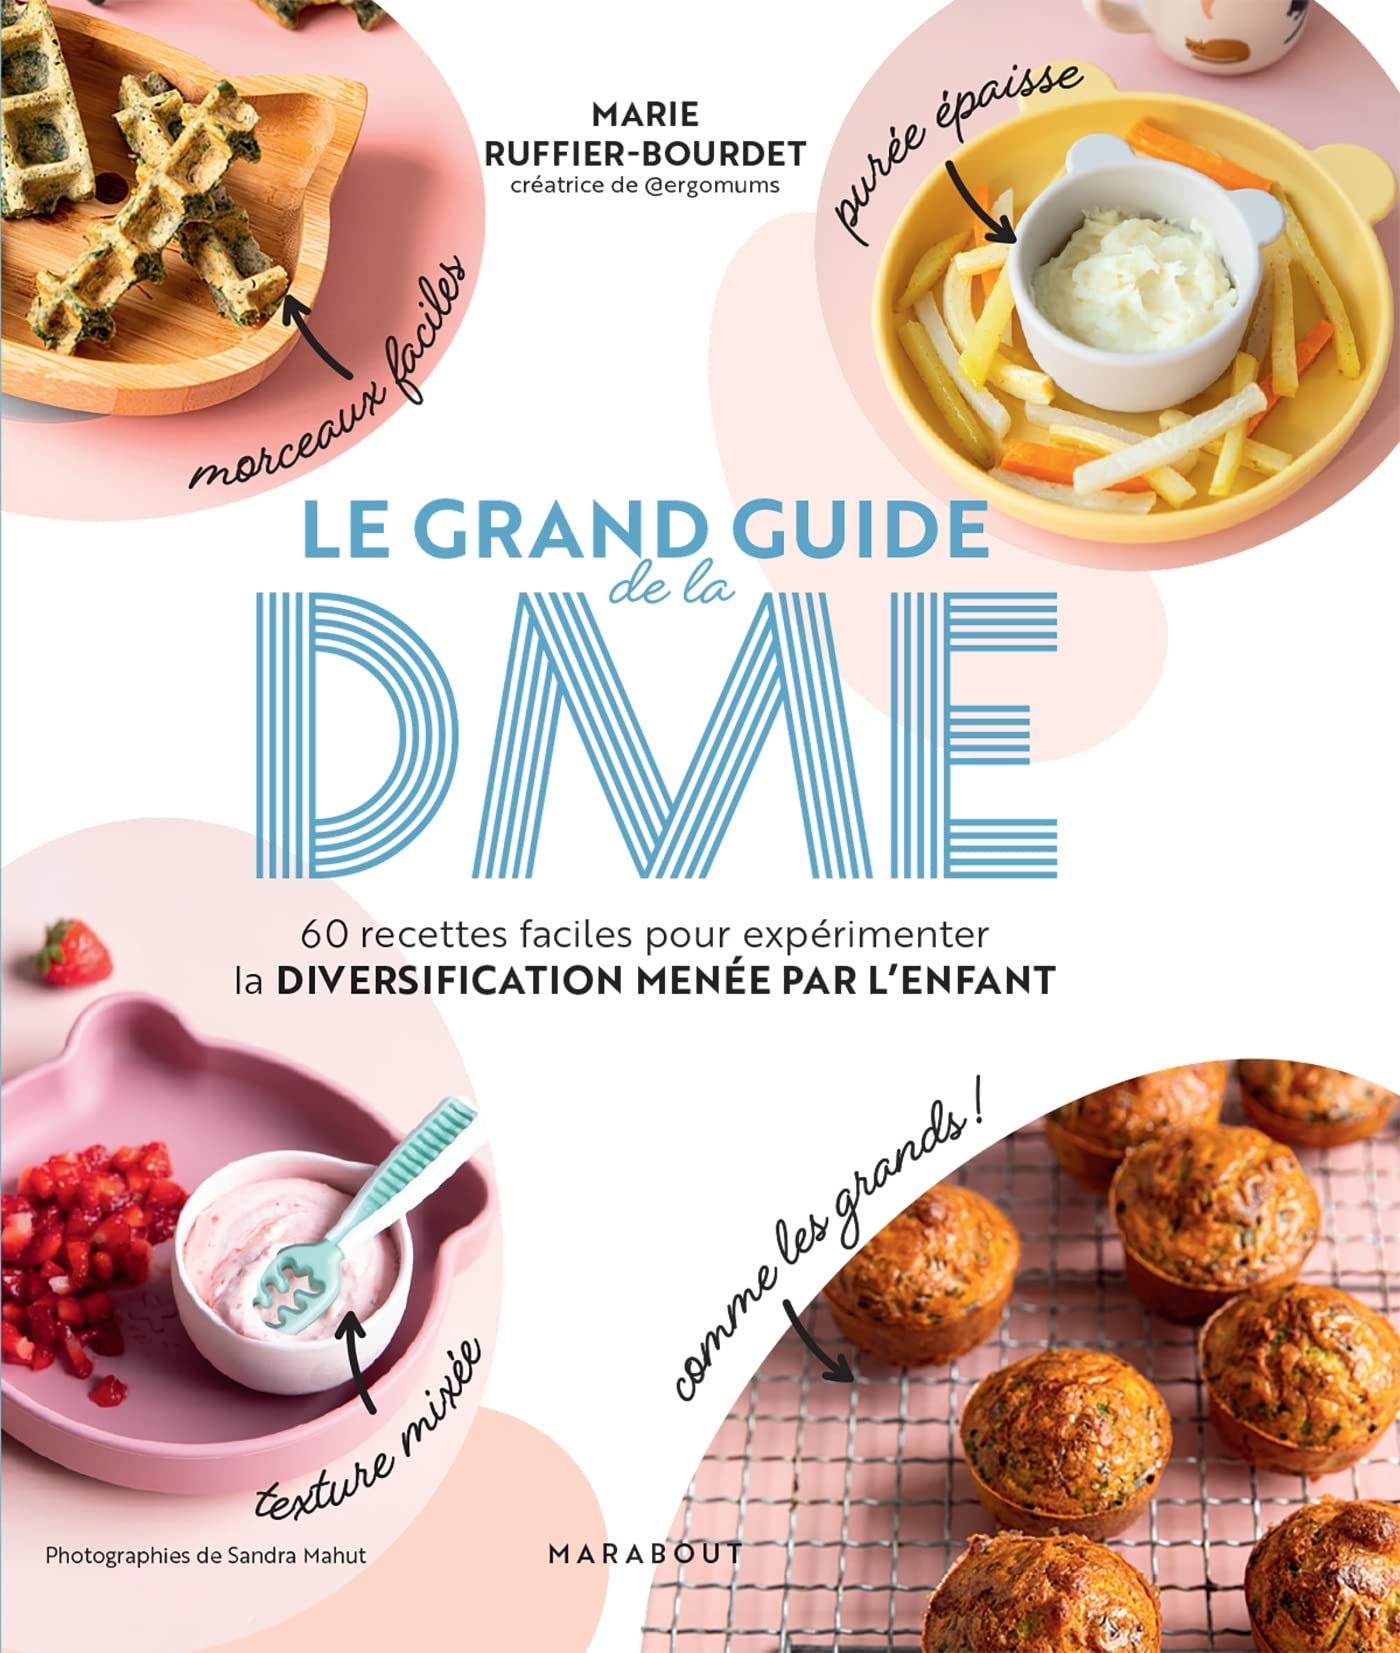 Le grand guide de la DME : 60 recettes faciles pour expérimenter la diversification menée par l'enfa